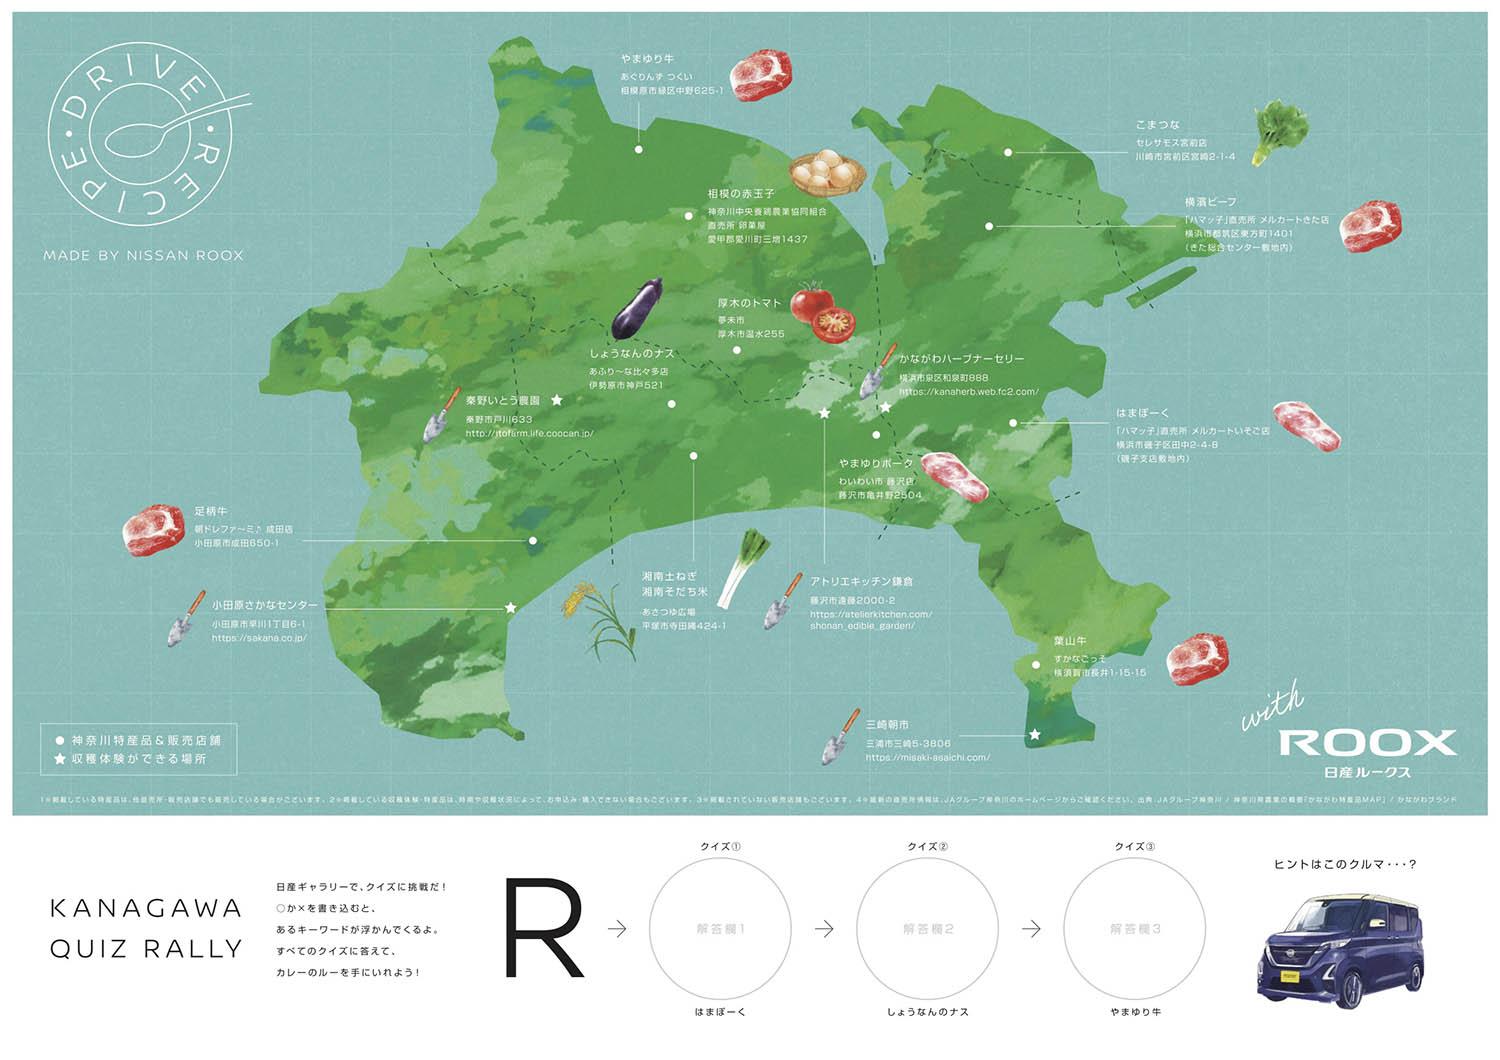 日産グローバル本社ギャラリーにて配布される神奈川県食材マップ